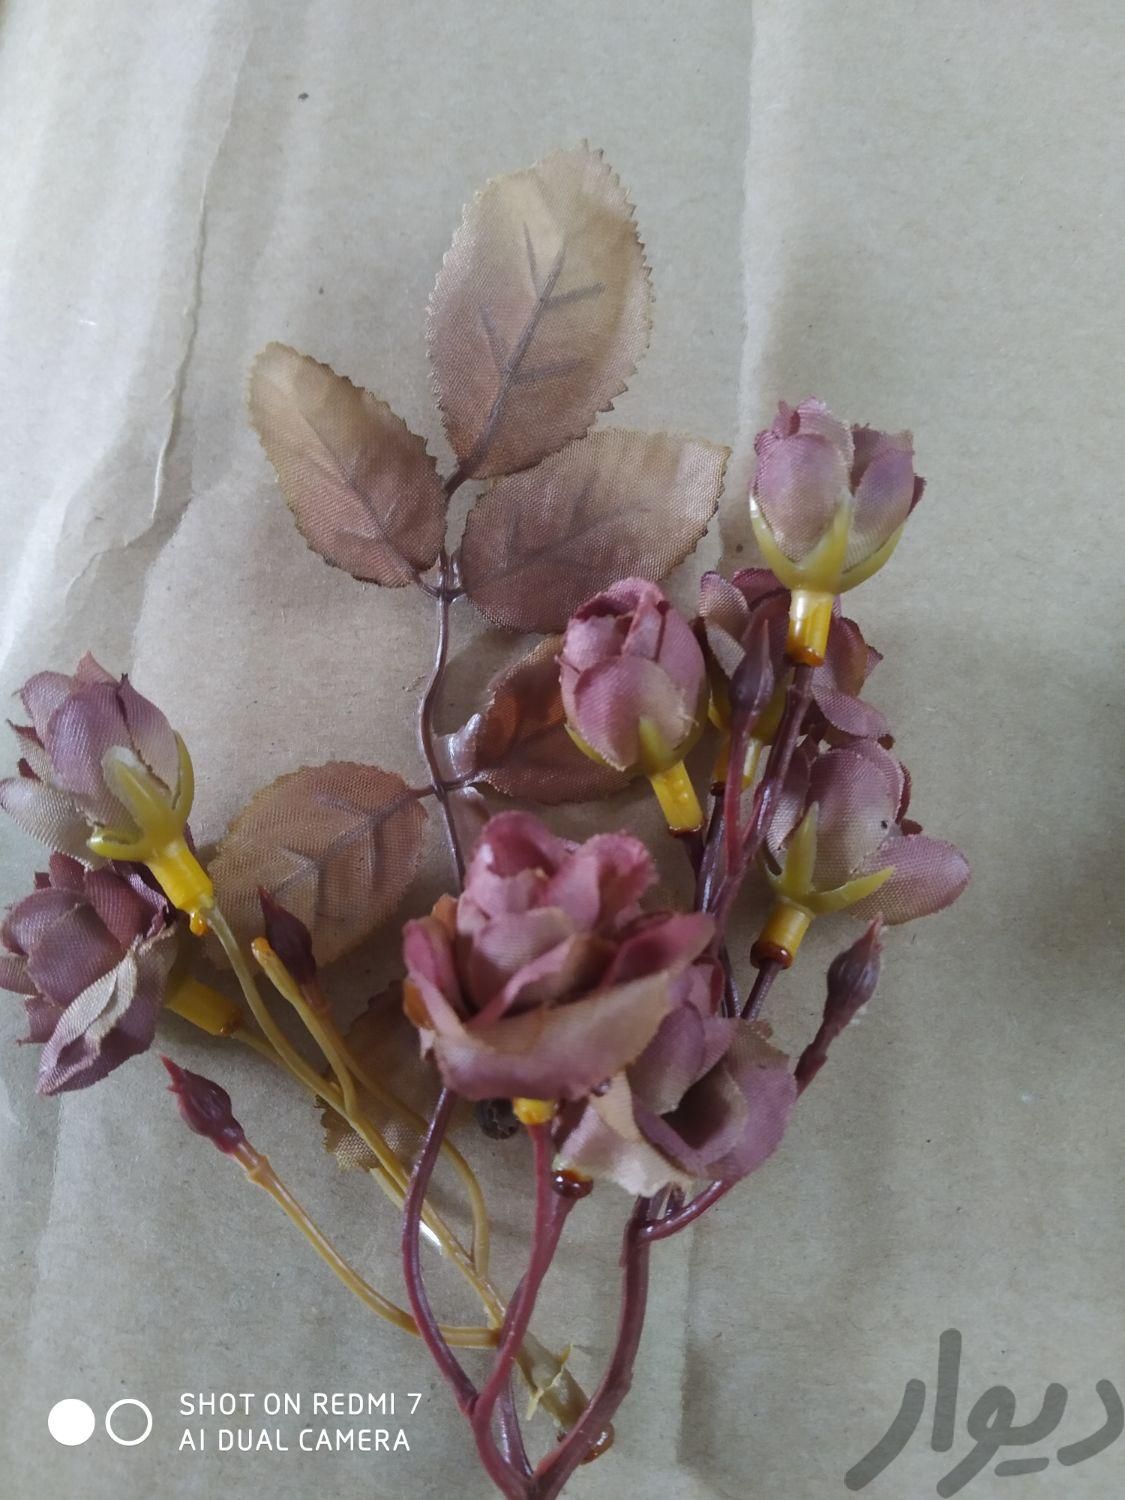 گلهای تزئینی برای کارهای دستی وپذیرش گلدان|گل مصنوعی|تهران, قیام|دیوار